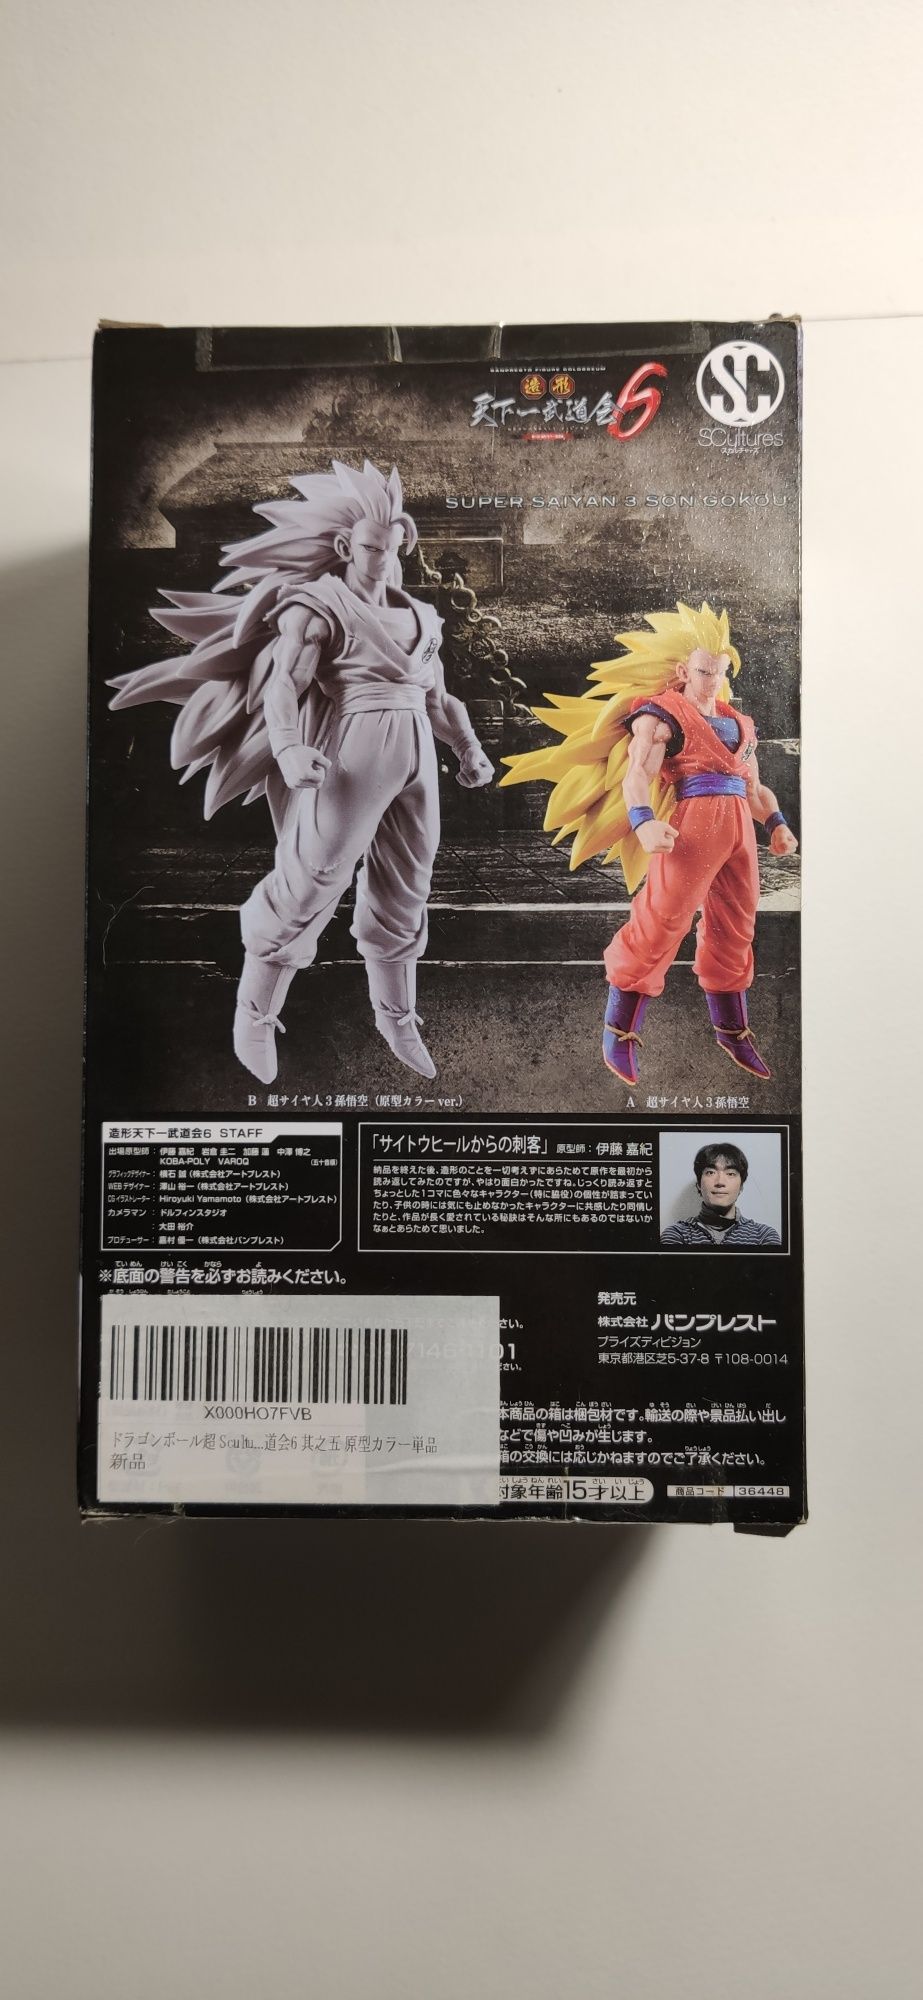 Dragon Ball super Zoukei Tenkaichi Budokai 6 Vol.5 - SS 3 Son Goku Spe